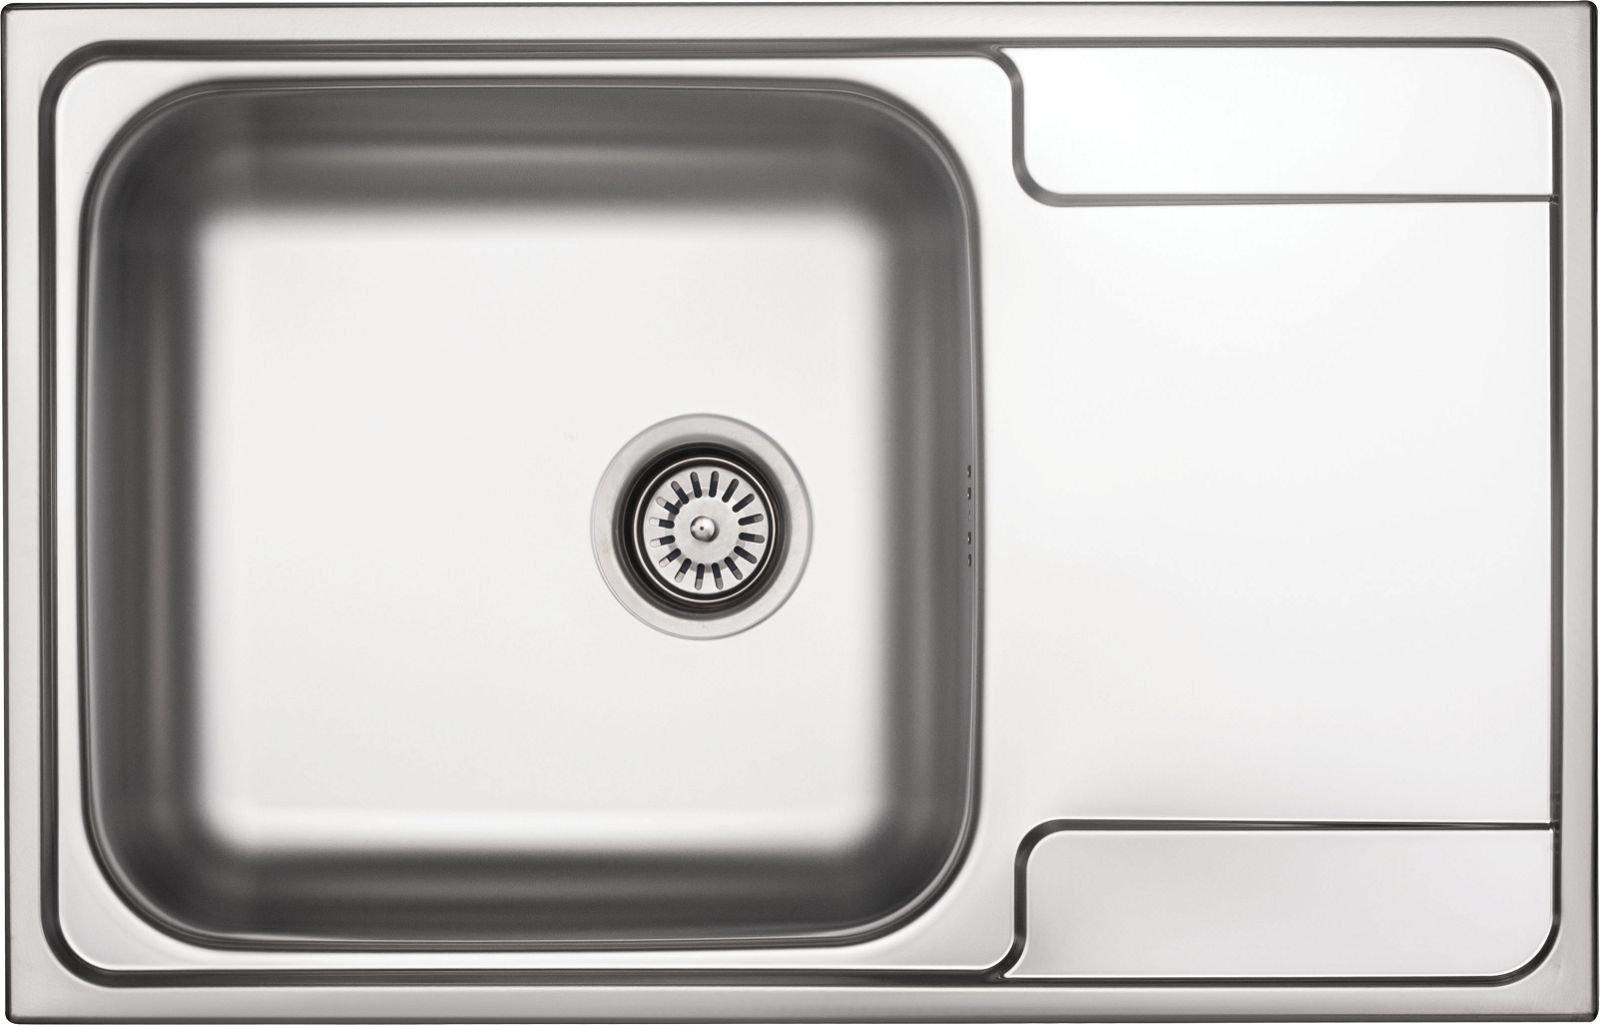 Steel sink, 1-bowl with drainer - ZEO_011C - Główne zdjęcie produktowe